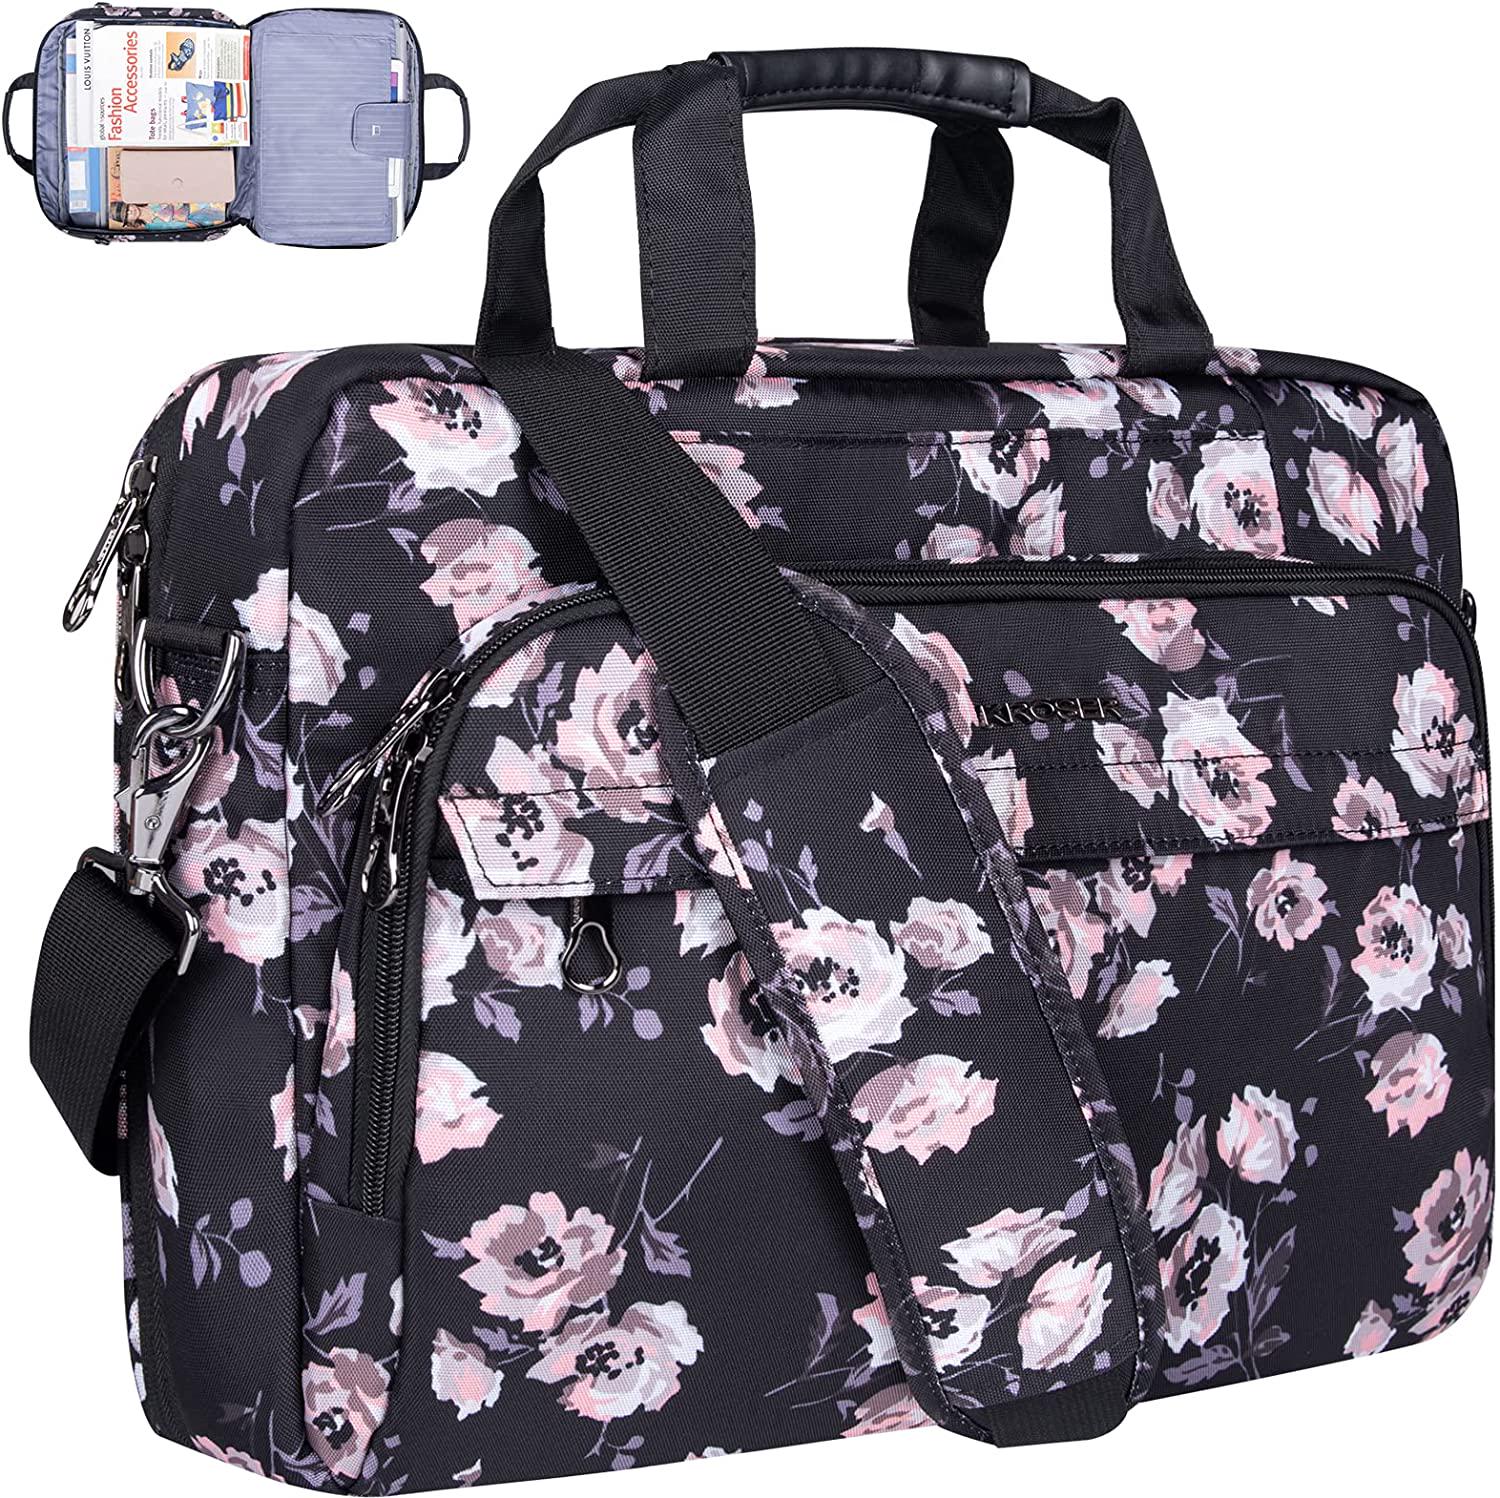 KROSER, KROSER Laptop Bag for Women Repellent Shoulder Messenger Bag 15.6 Inch Laptop Computer Briefcases Satchel Tablet Bussiness Carrying Handbag